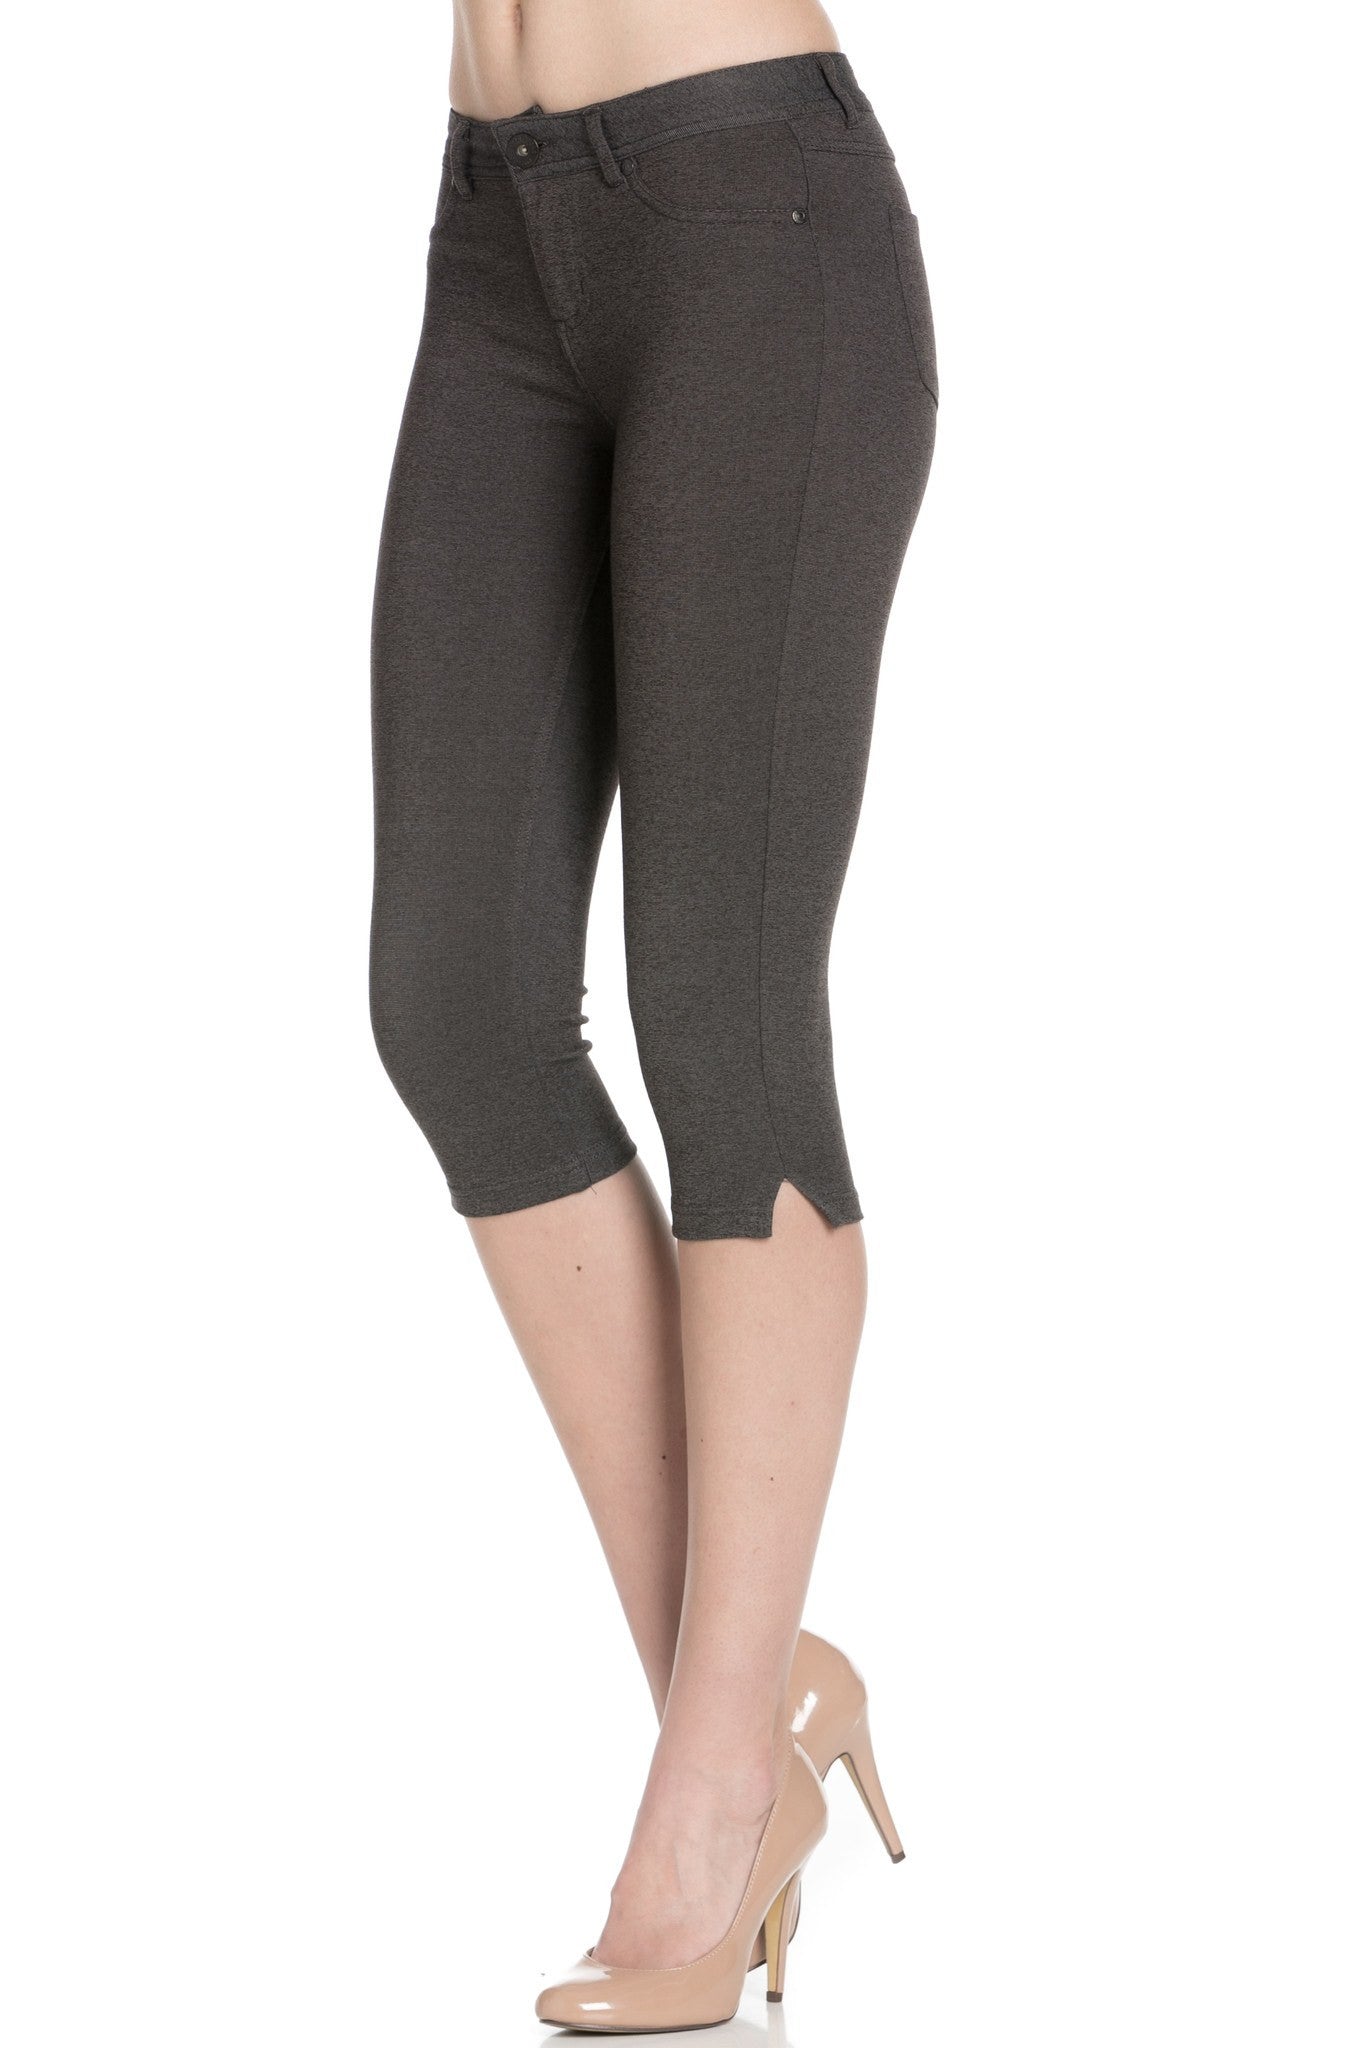 Poplooks Women's 4 Way Stretchy Ponte Knit Capri Skinny Jeans (Charcoal)